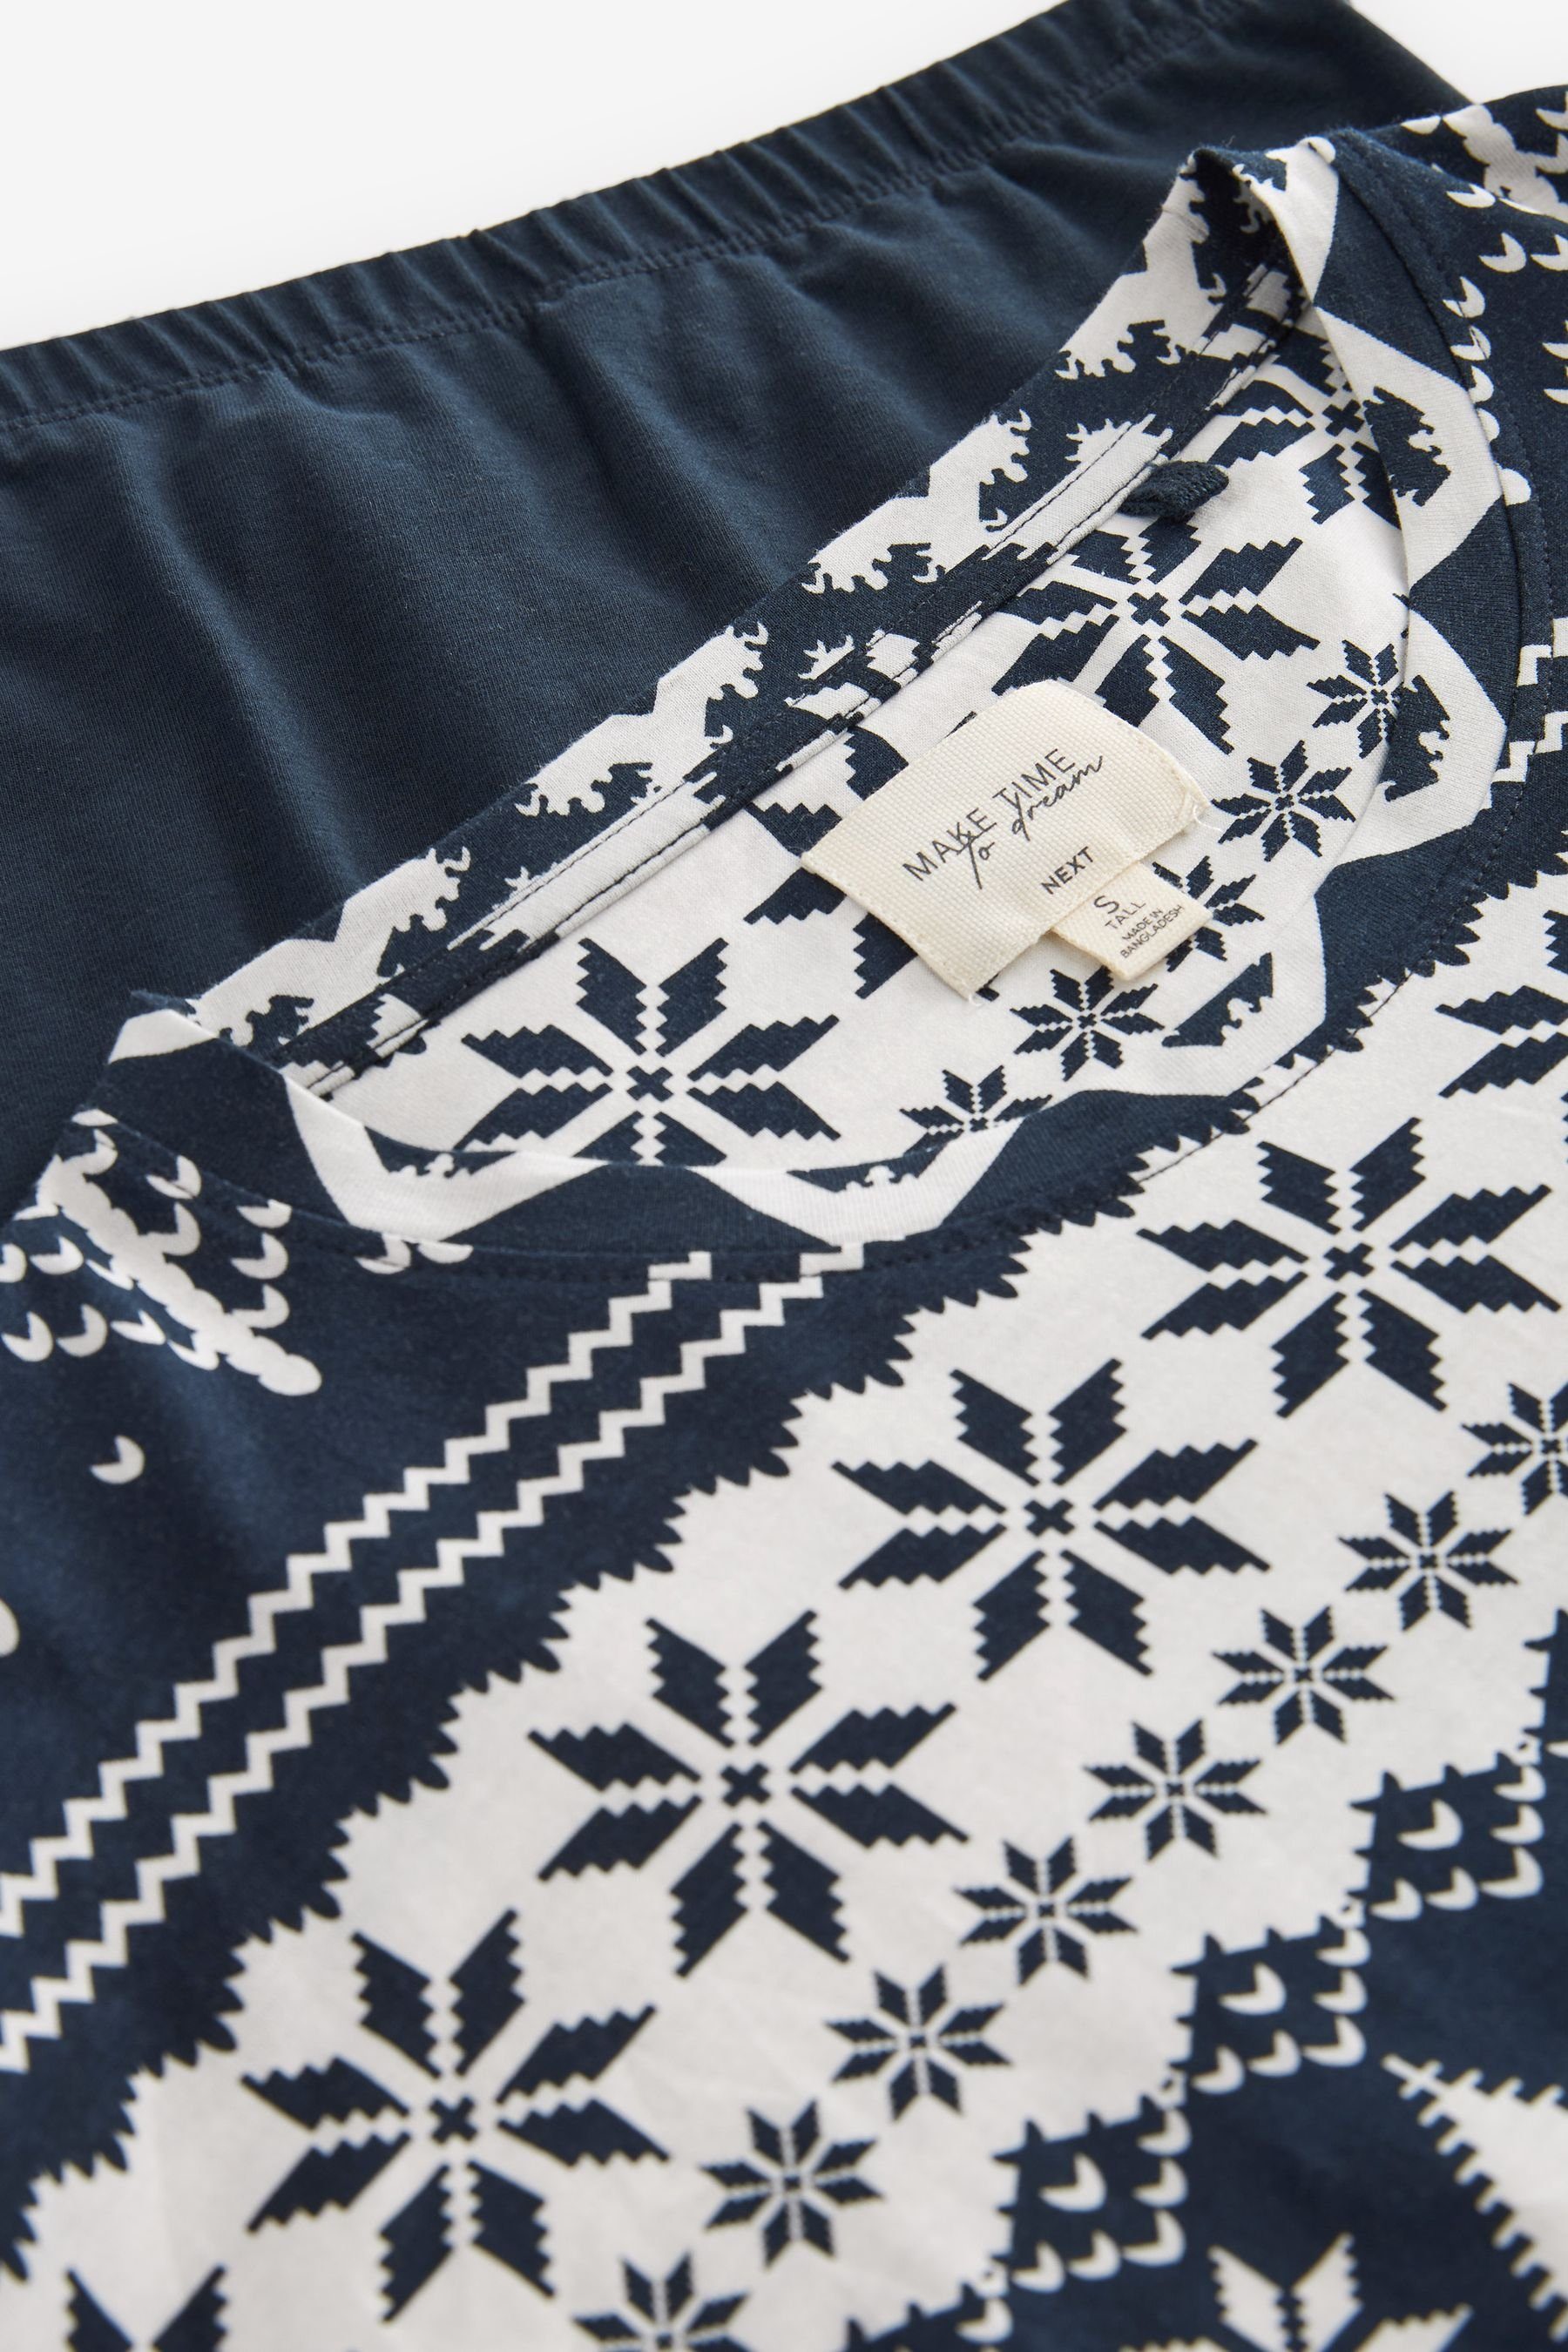 tlg) (Familienkollektion) Next Weihnachten (2 Umstandspyjama Damen-Schlafanzug